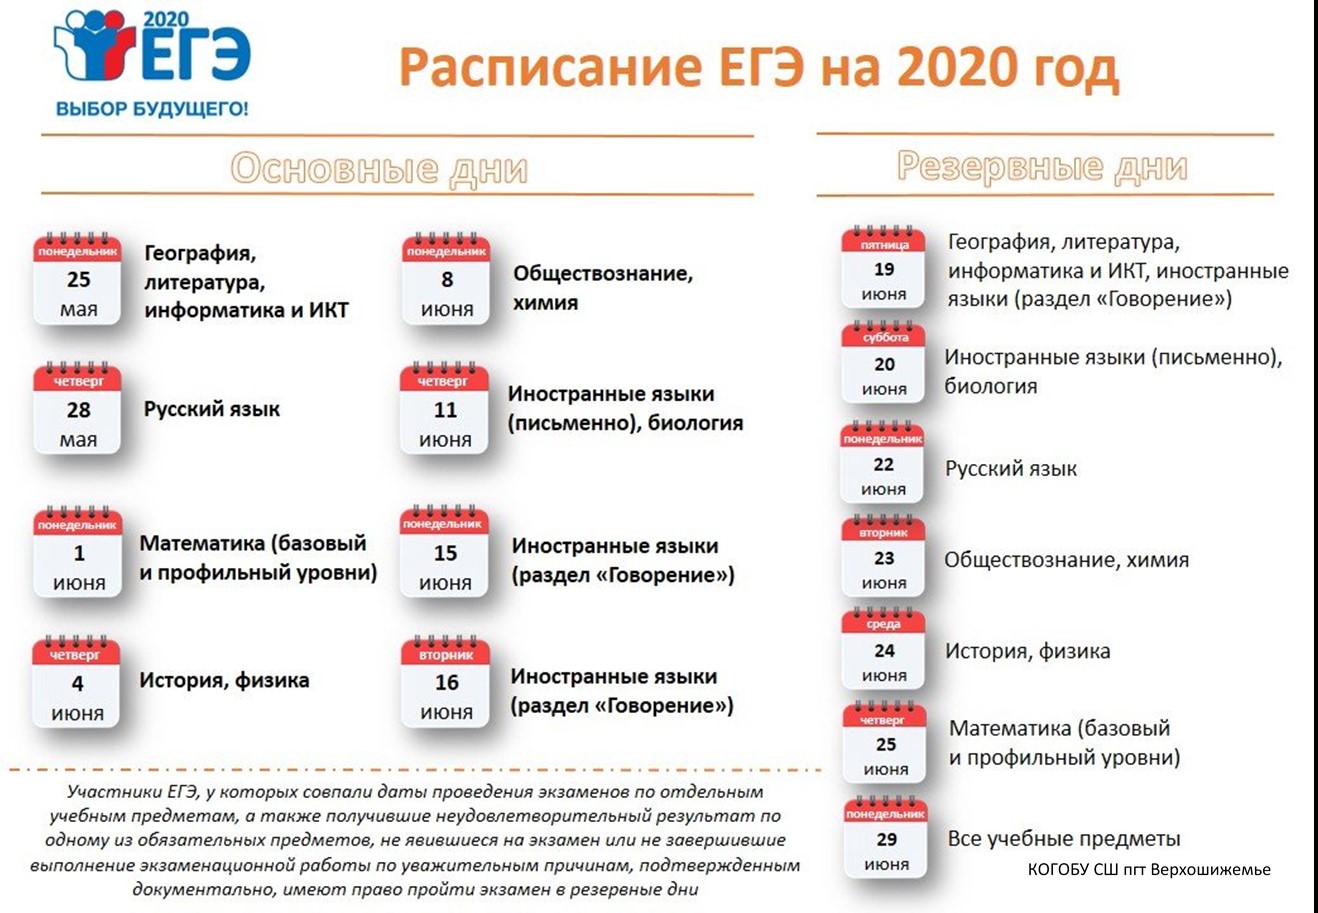 Даты экзаменов егэ 2024 11 класс. ЕГЭ 2020 даты проведения. Сроки проведения единого государственного экзамена в 2020 году. ЕГЭ 2020 расписание экзаменов. Резервные даты ЕГЭ 2020.